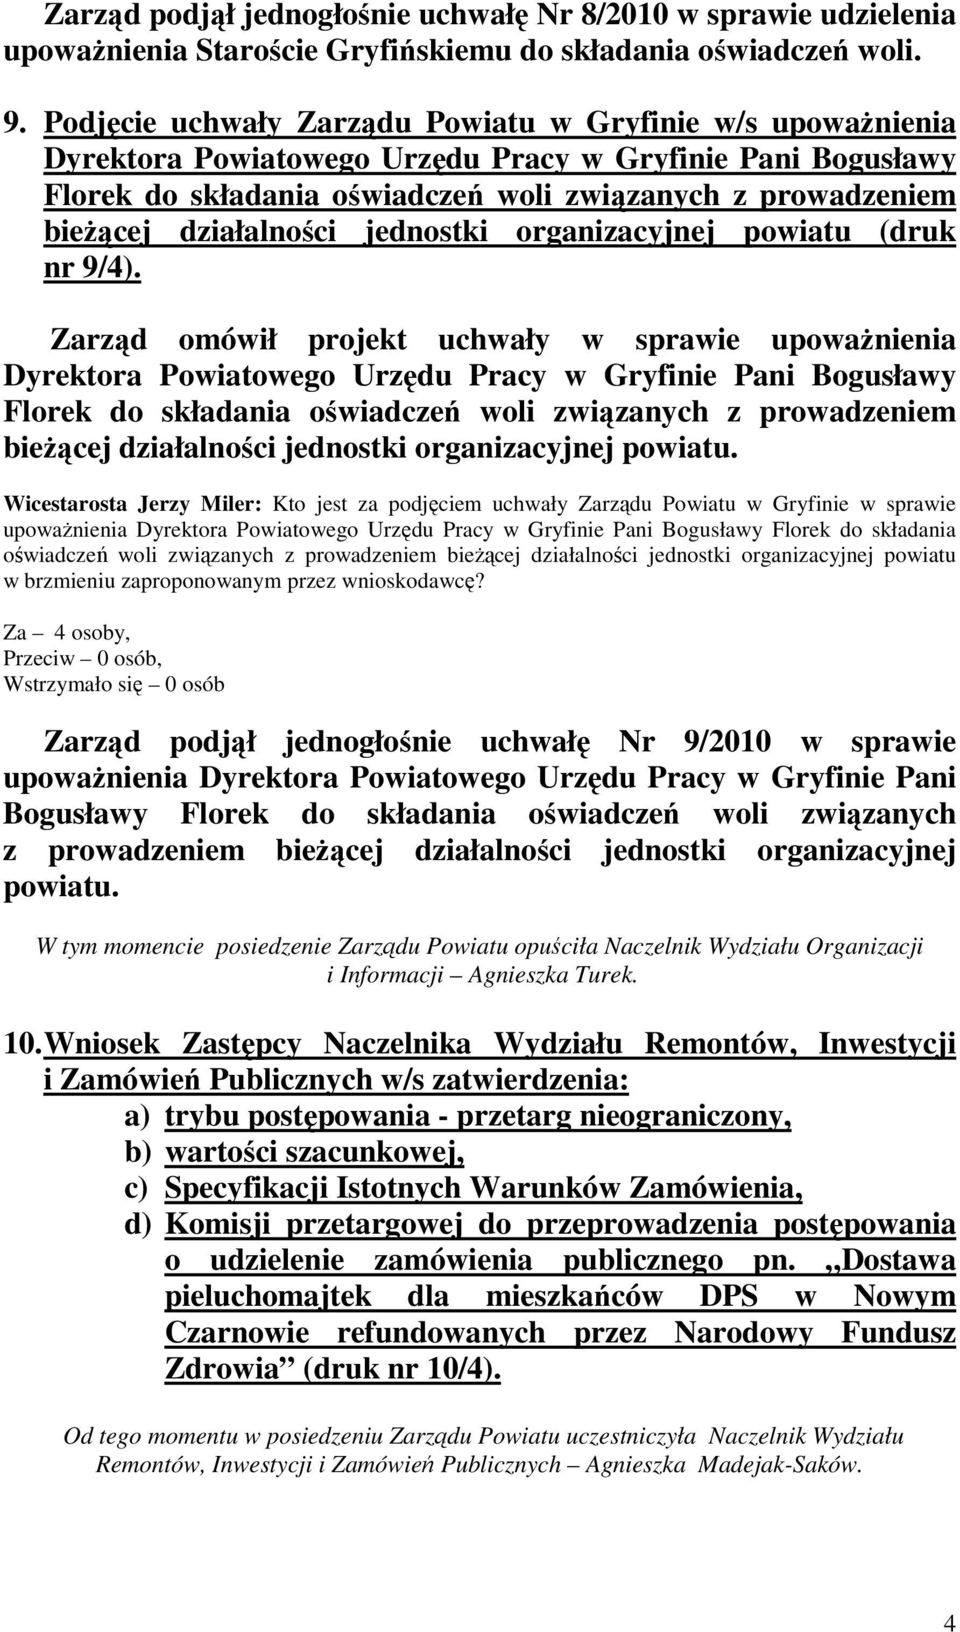 działalności jednostki organizacyjnej powiatu (druk nr 9/4).